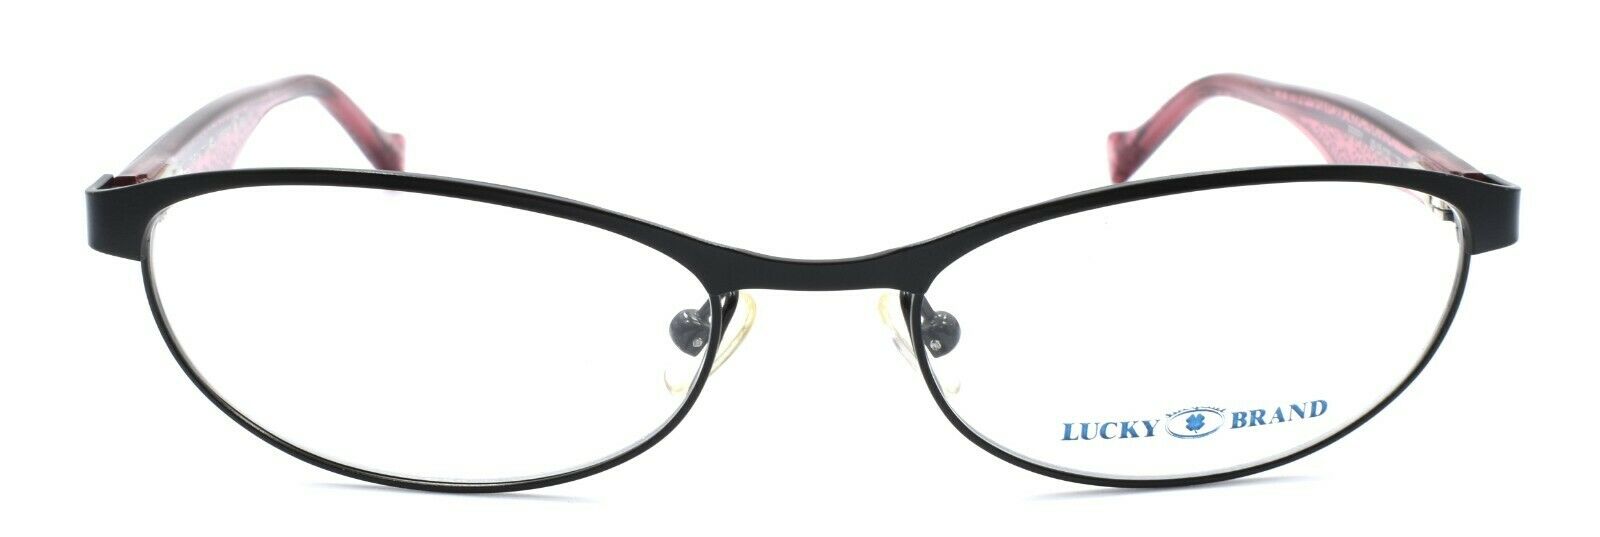 2-LUCKY BRAND Peppy Kids Girls Eyeglasses Frames 49-16-130 Black-751286248562-IKSpecs